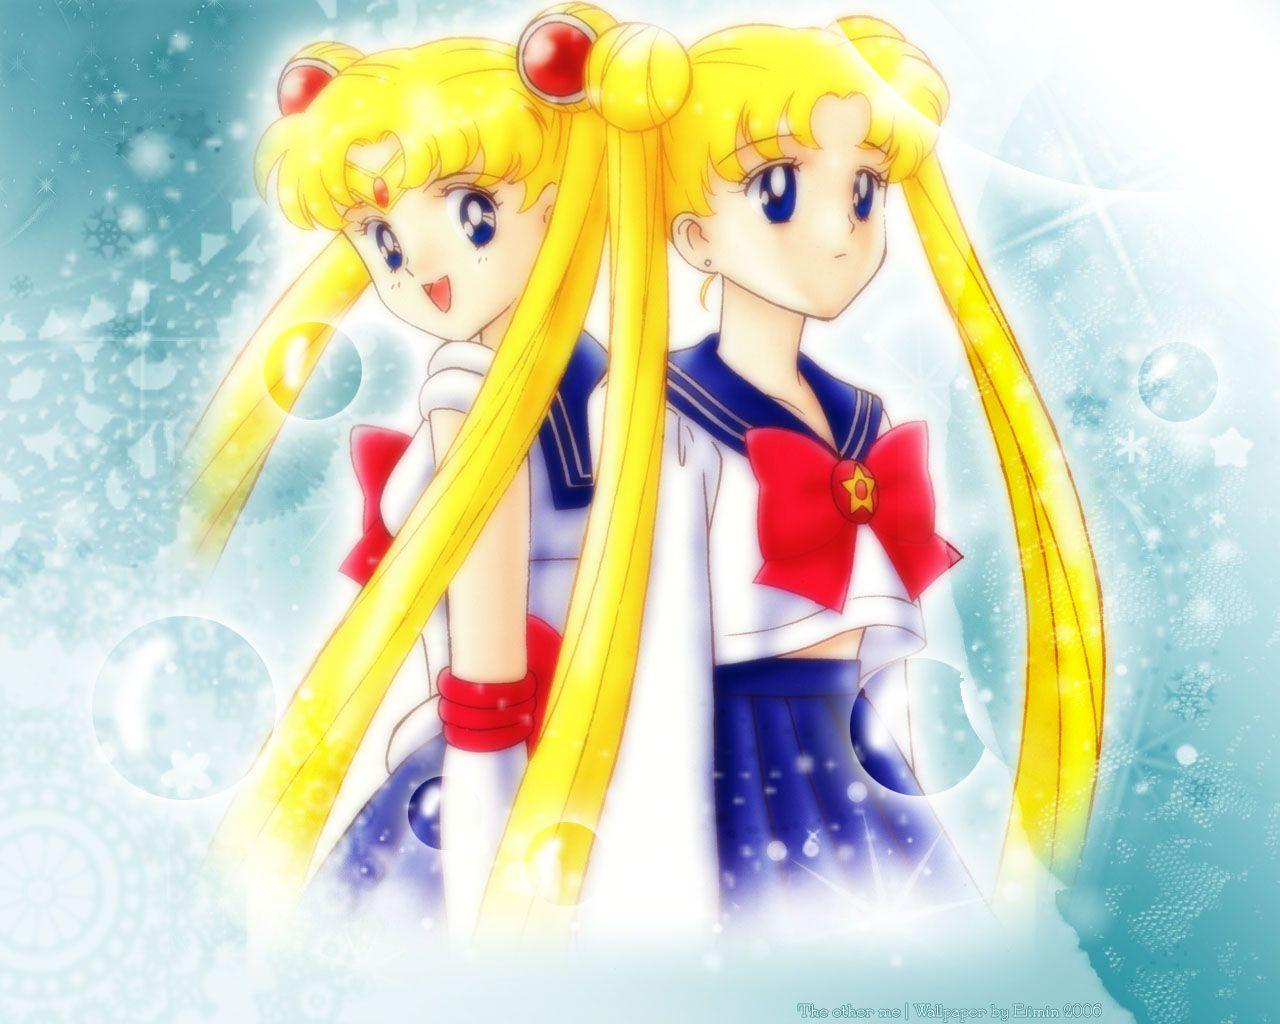 Tsukino Usagi (Serena) Senshi Sailor Moon